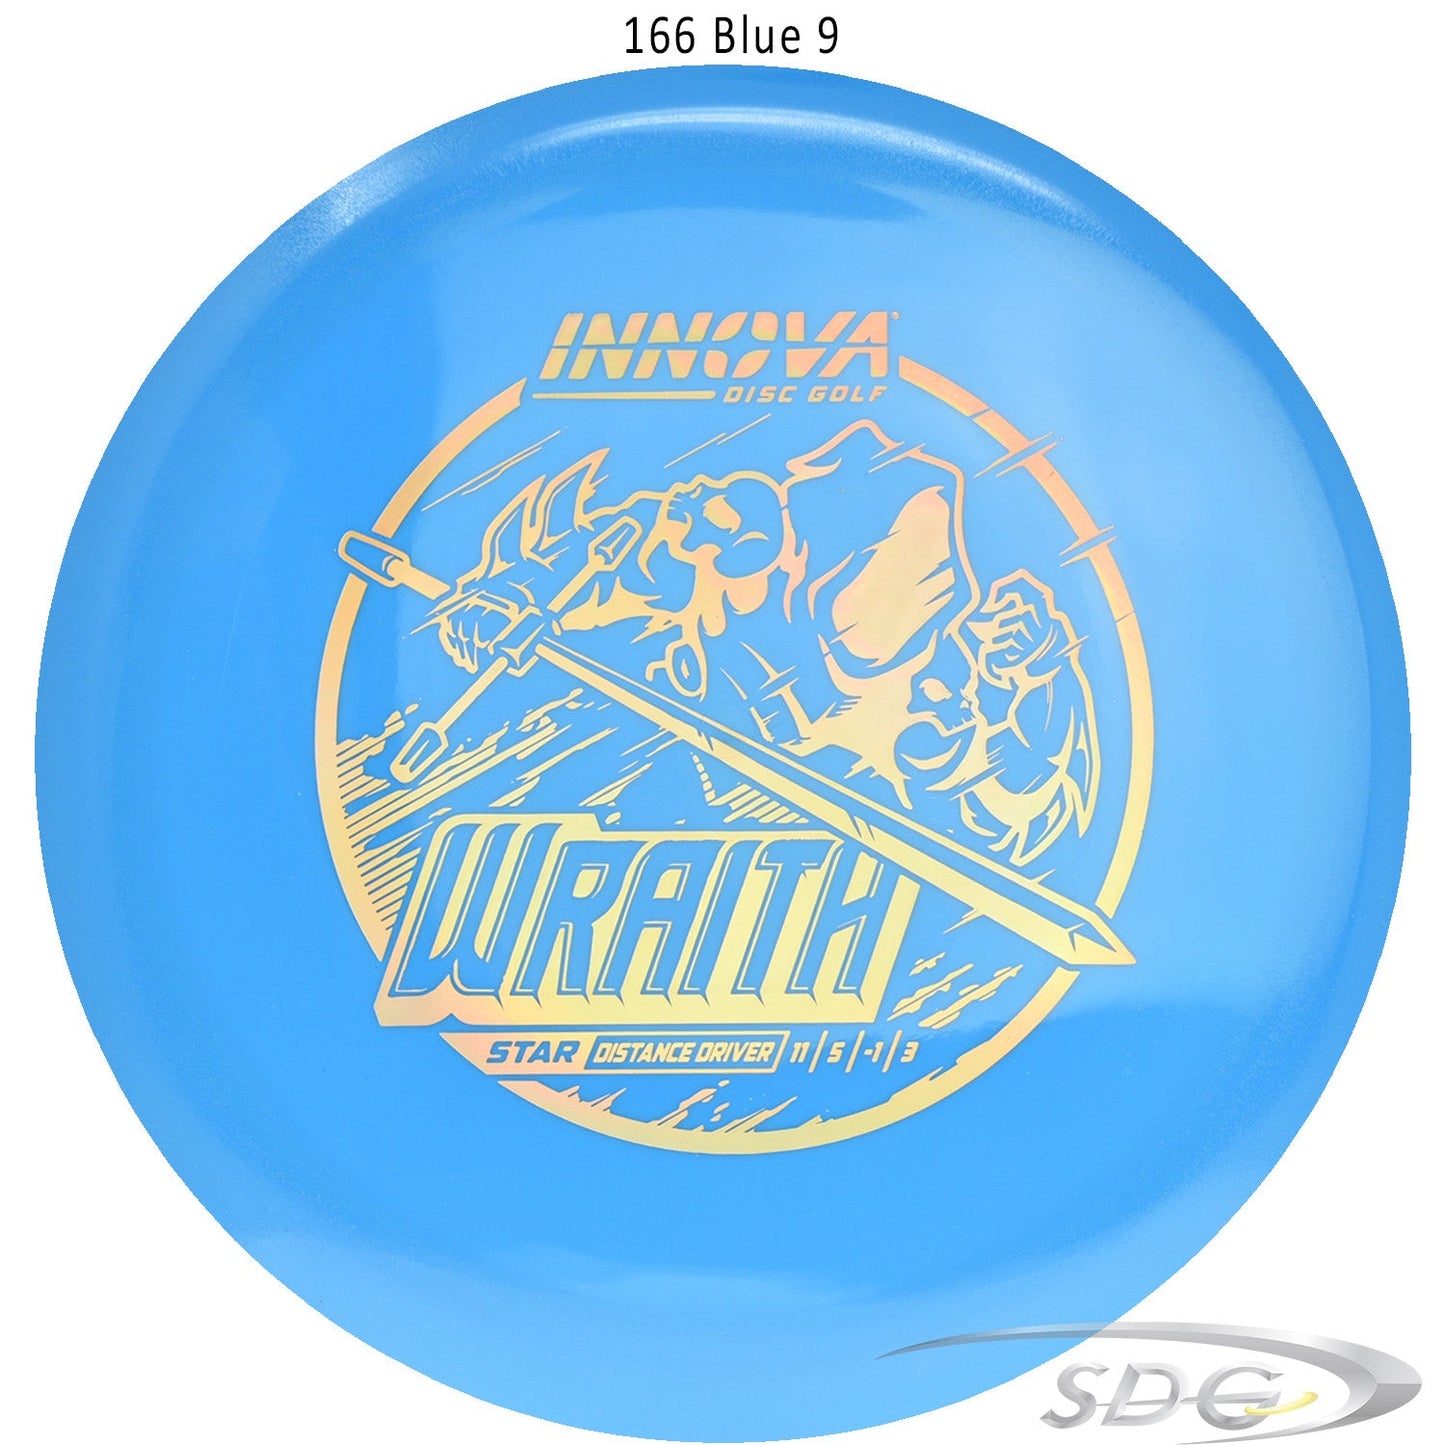 innova-star-wraith-disc-golf-distance-driver 166 Blue 9 